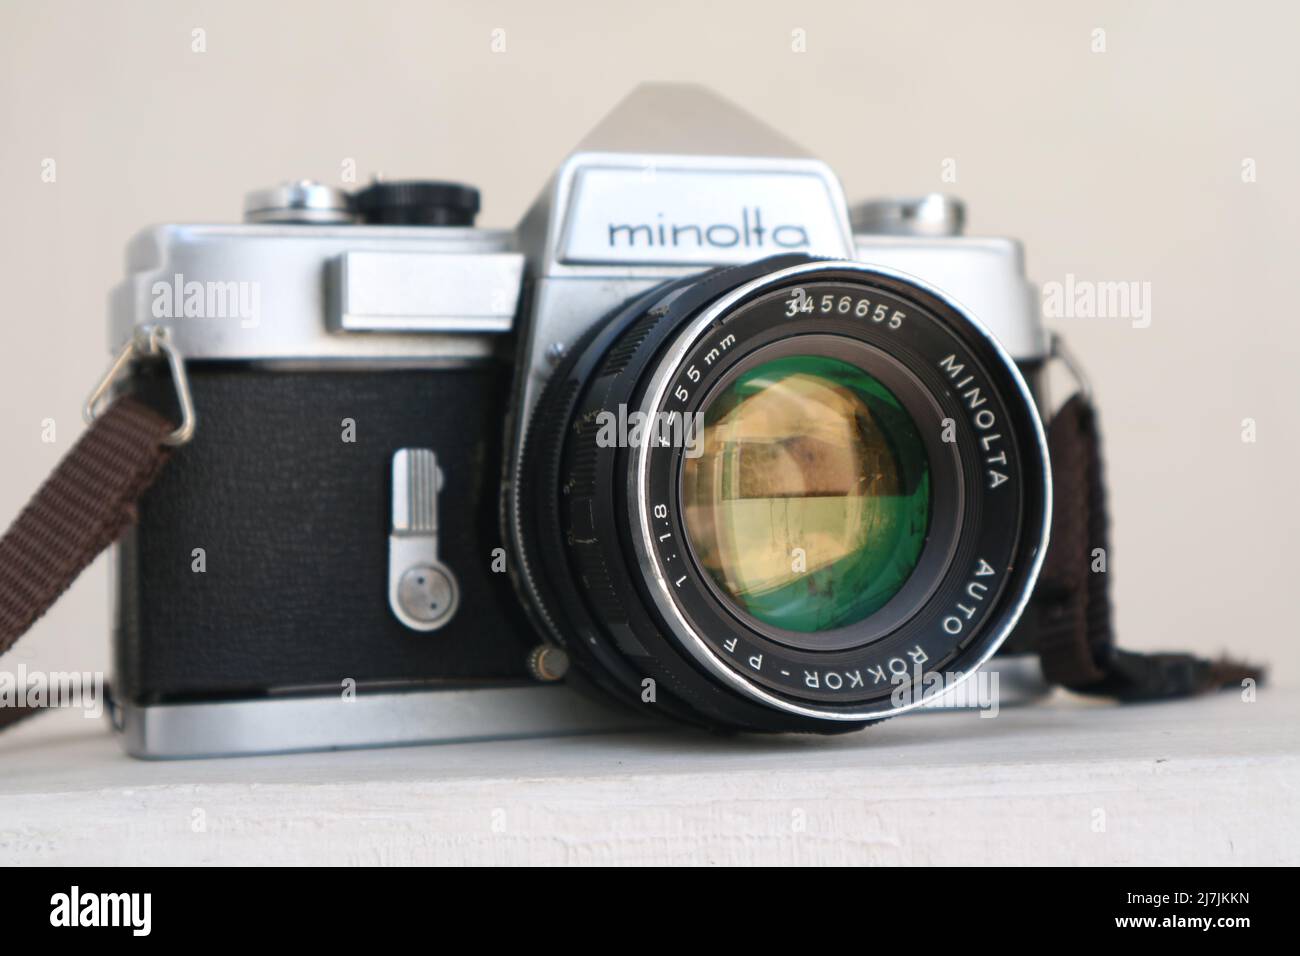 SIDOARJO, INDONESIA - 05 maggio 2022: Minolta SR-1 con MC Rokkor-PF 1:1,4 f=58mm telecamera analogica a film d'epoca 35mm, lanciata nel 1966. Foto Stock